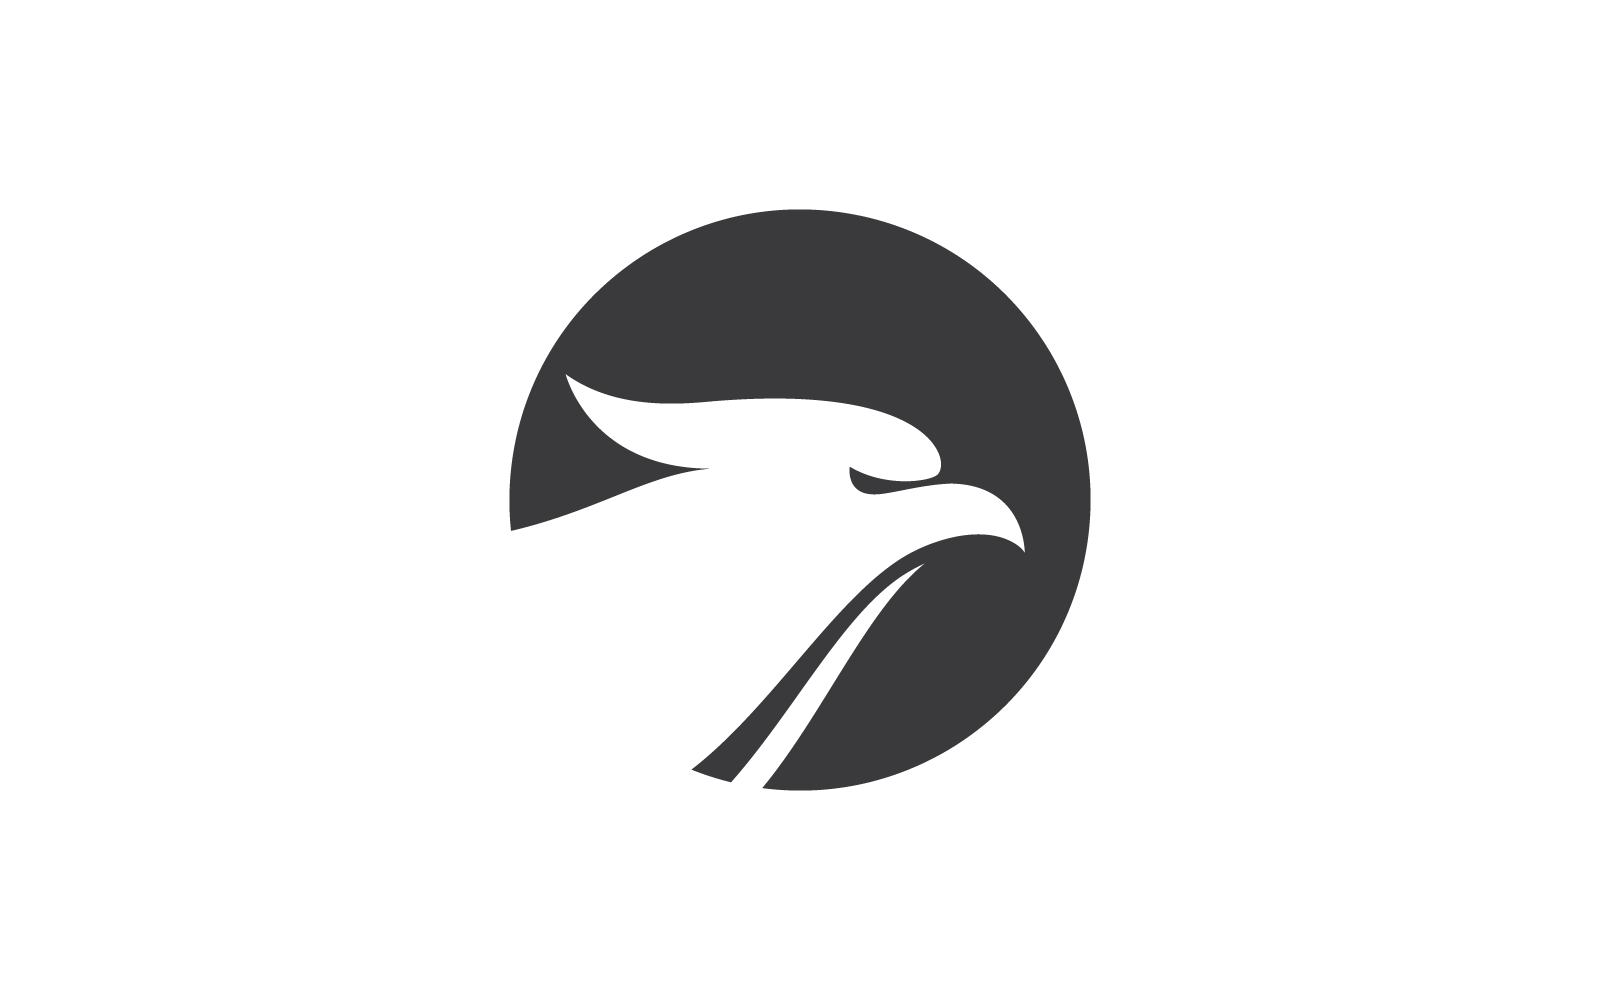 Falcon eagle bird illustration vector logo flat design